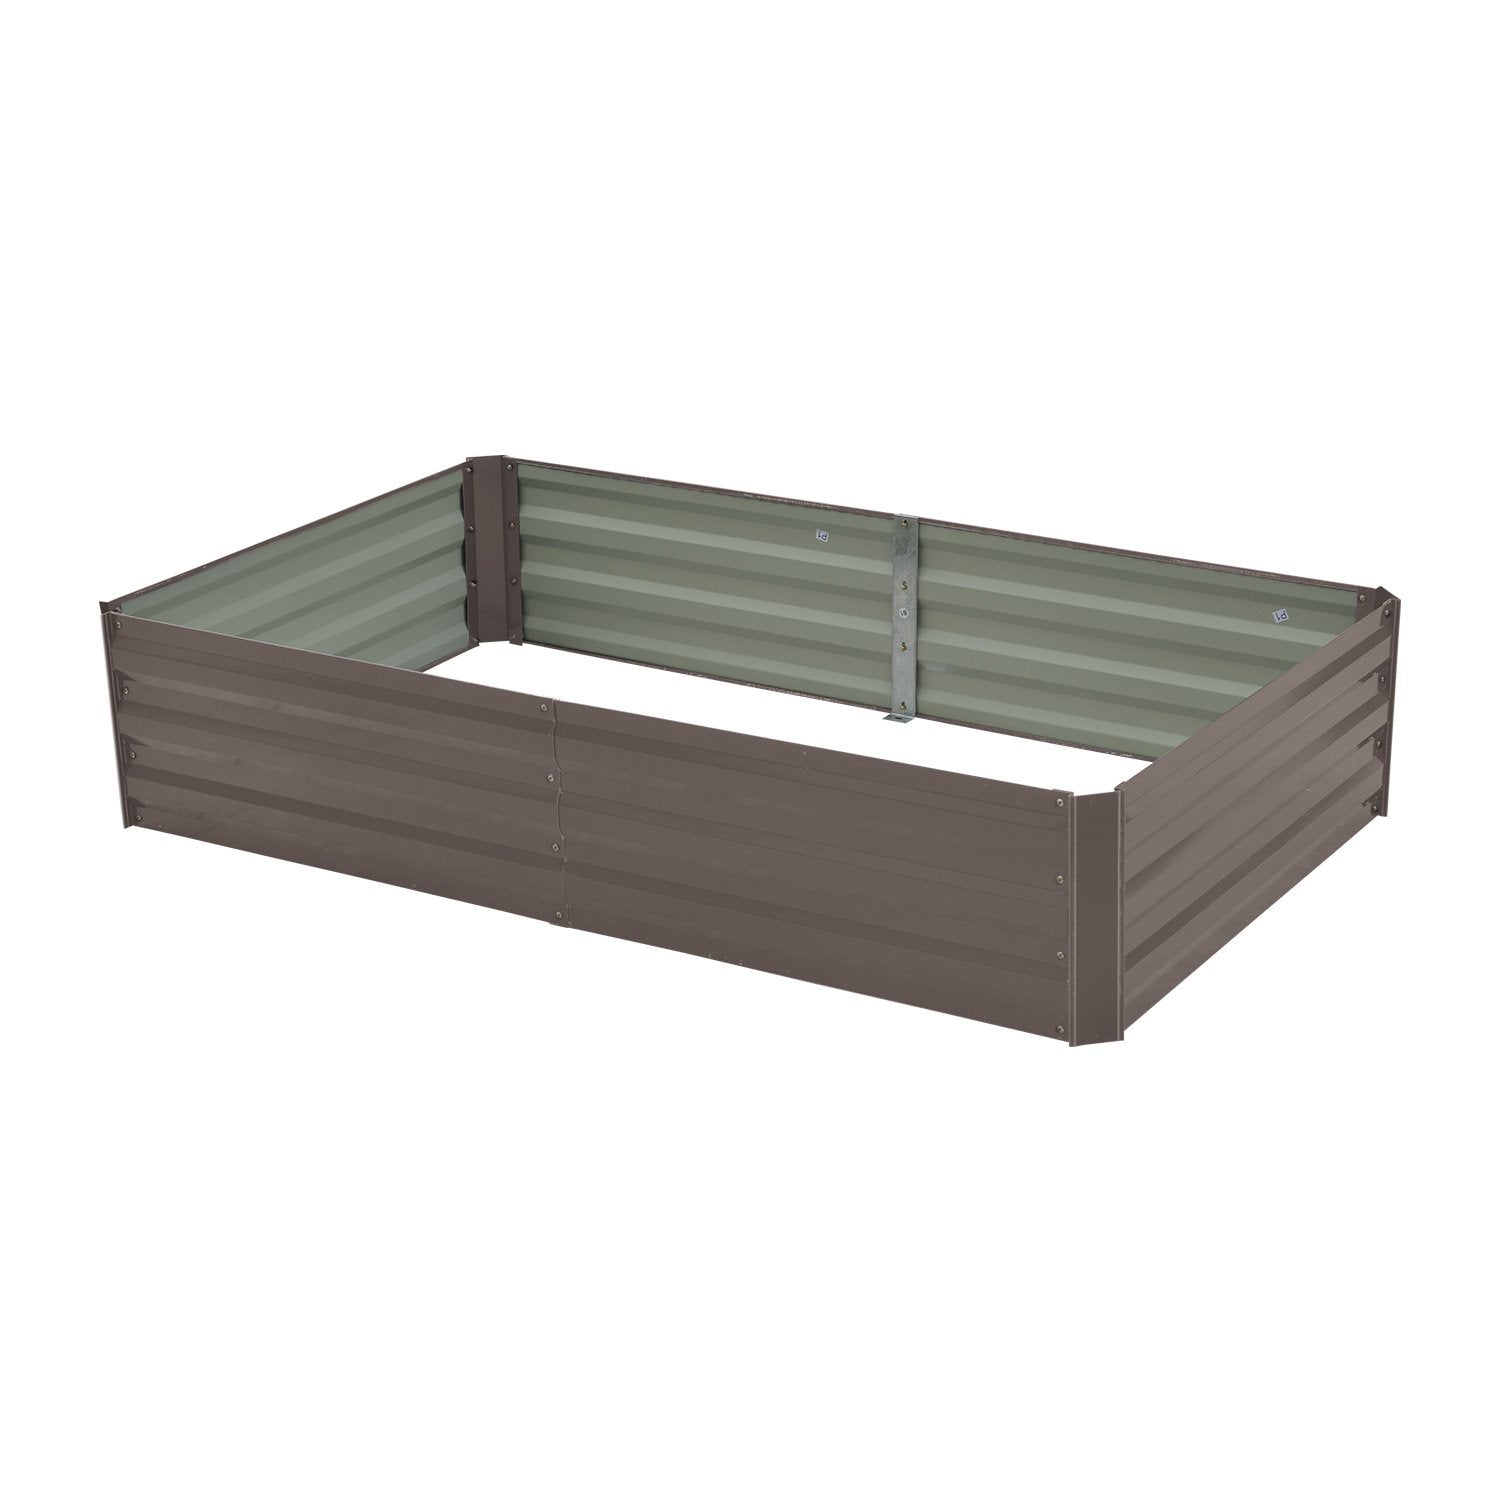 Garden Bed 150 x 90 x 30cm Galvanized Steel - Grey